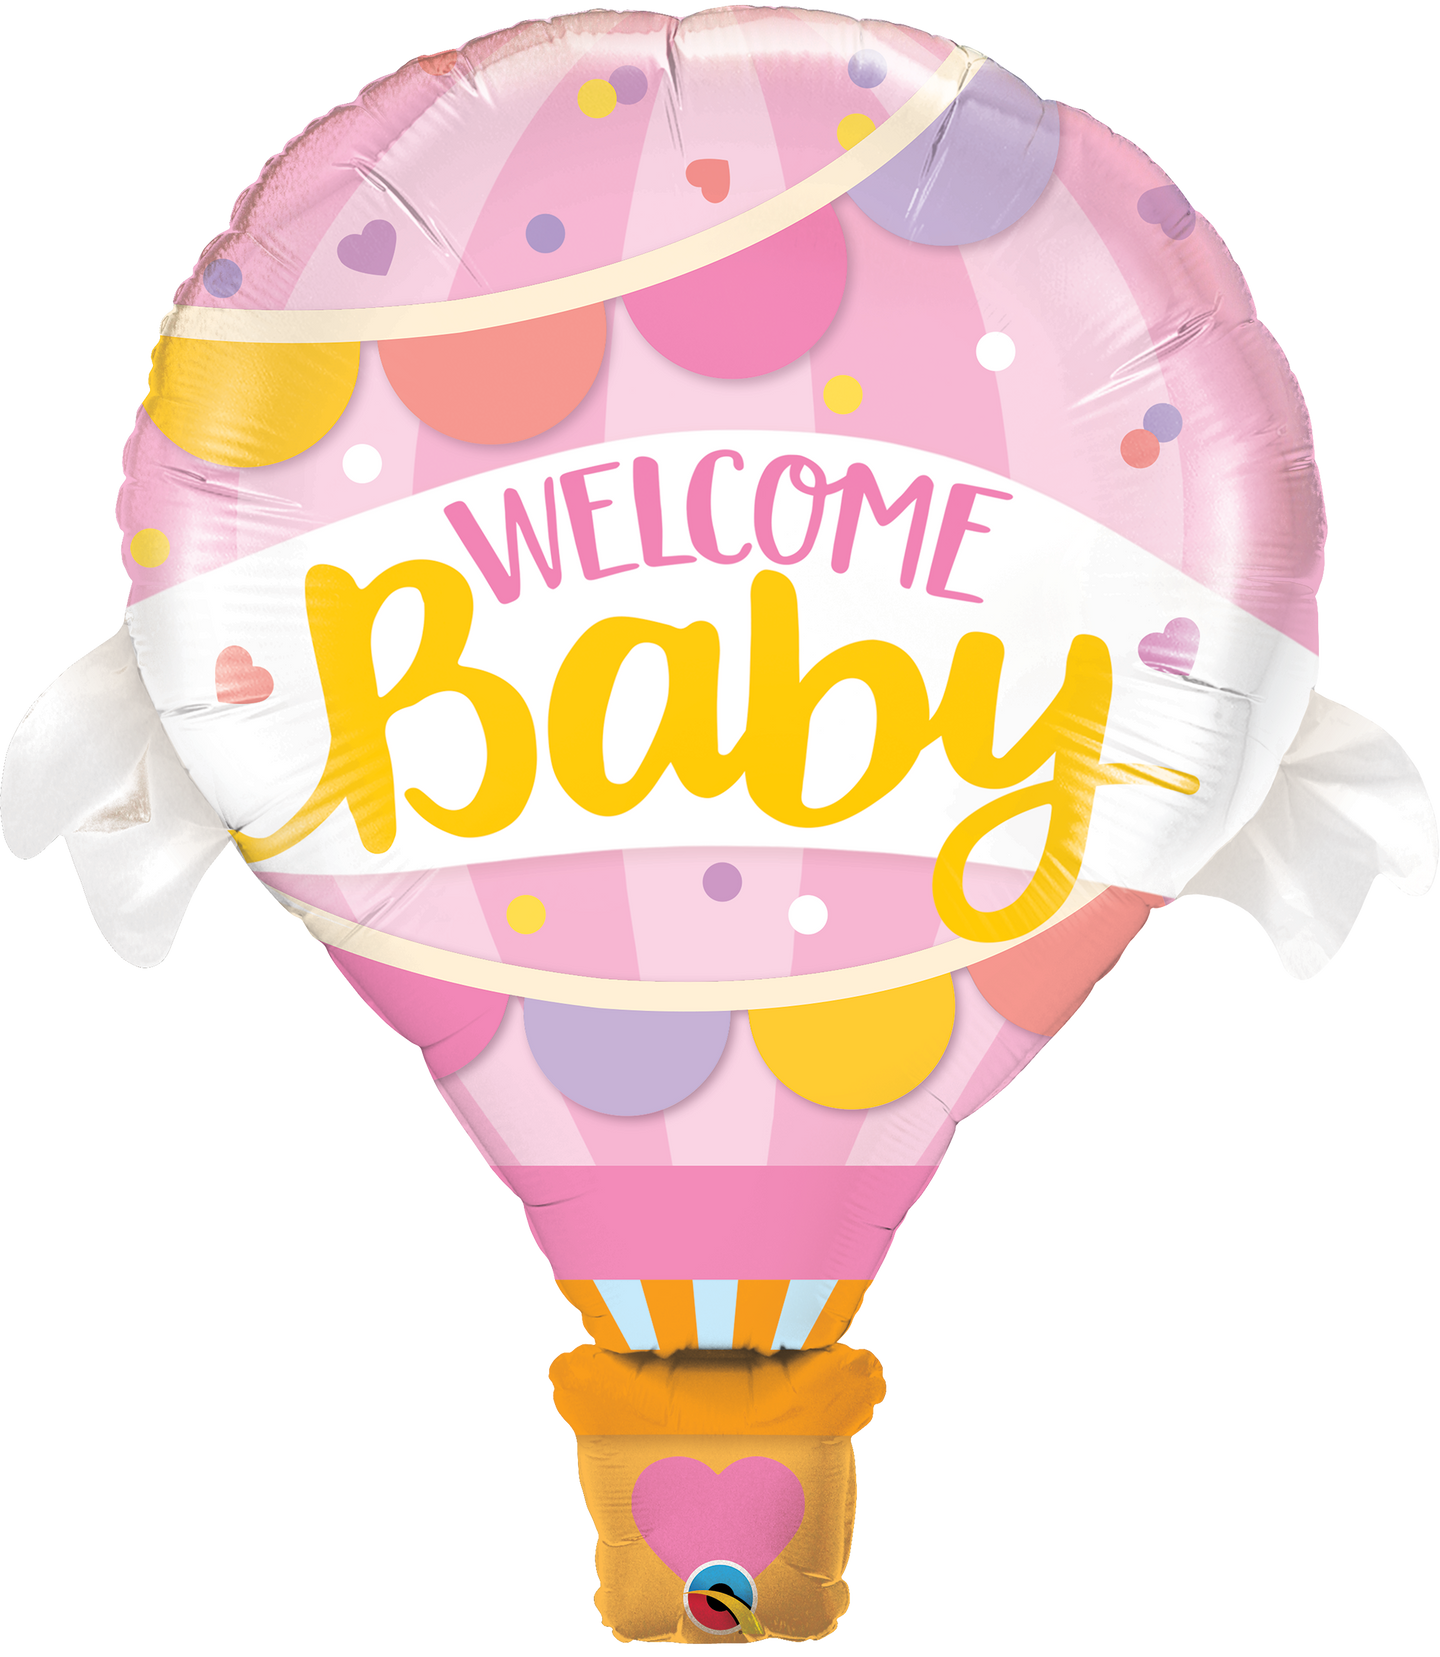 Ballon rose bienvenue bébé